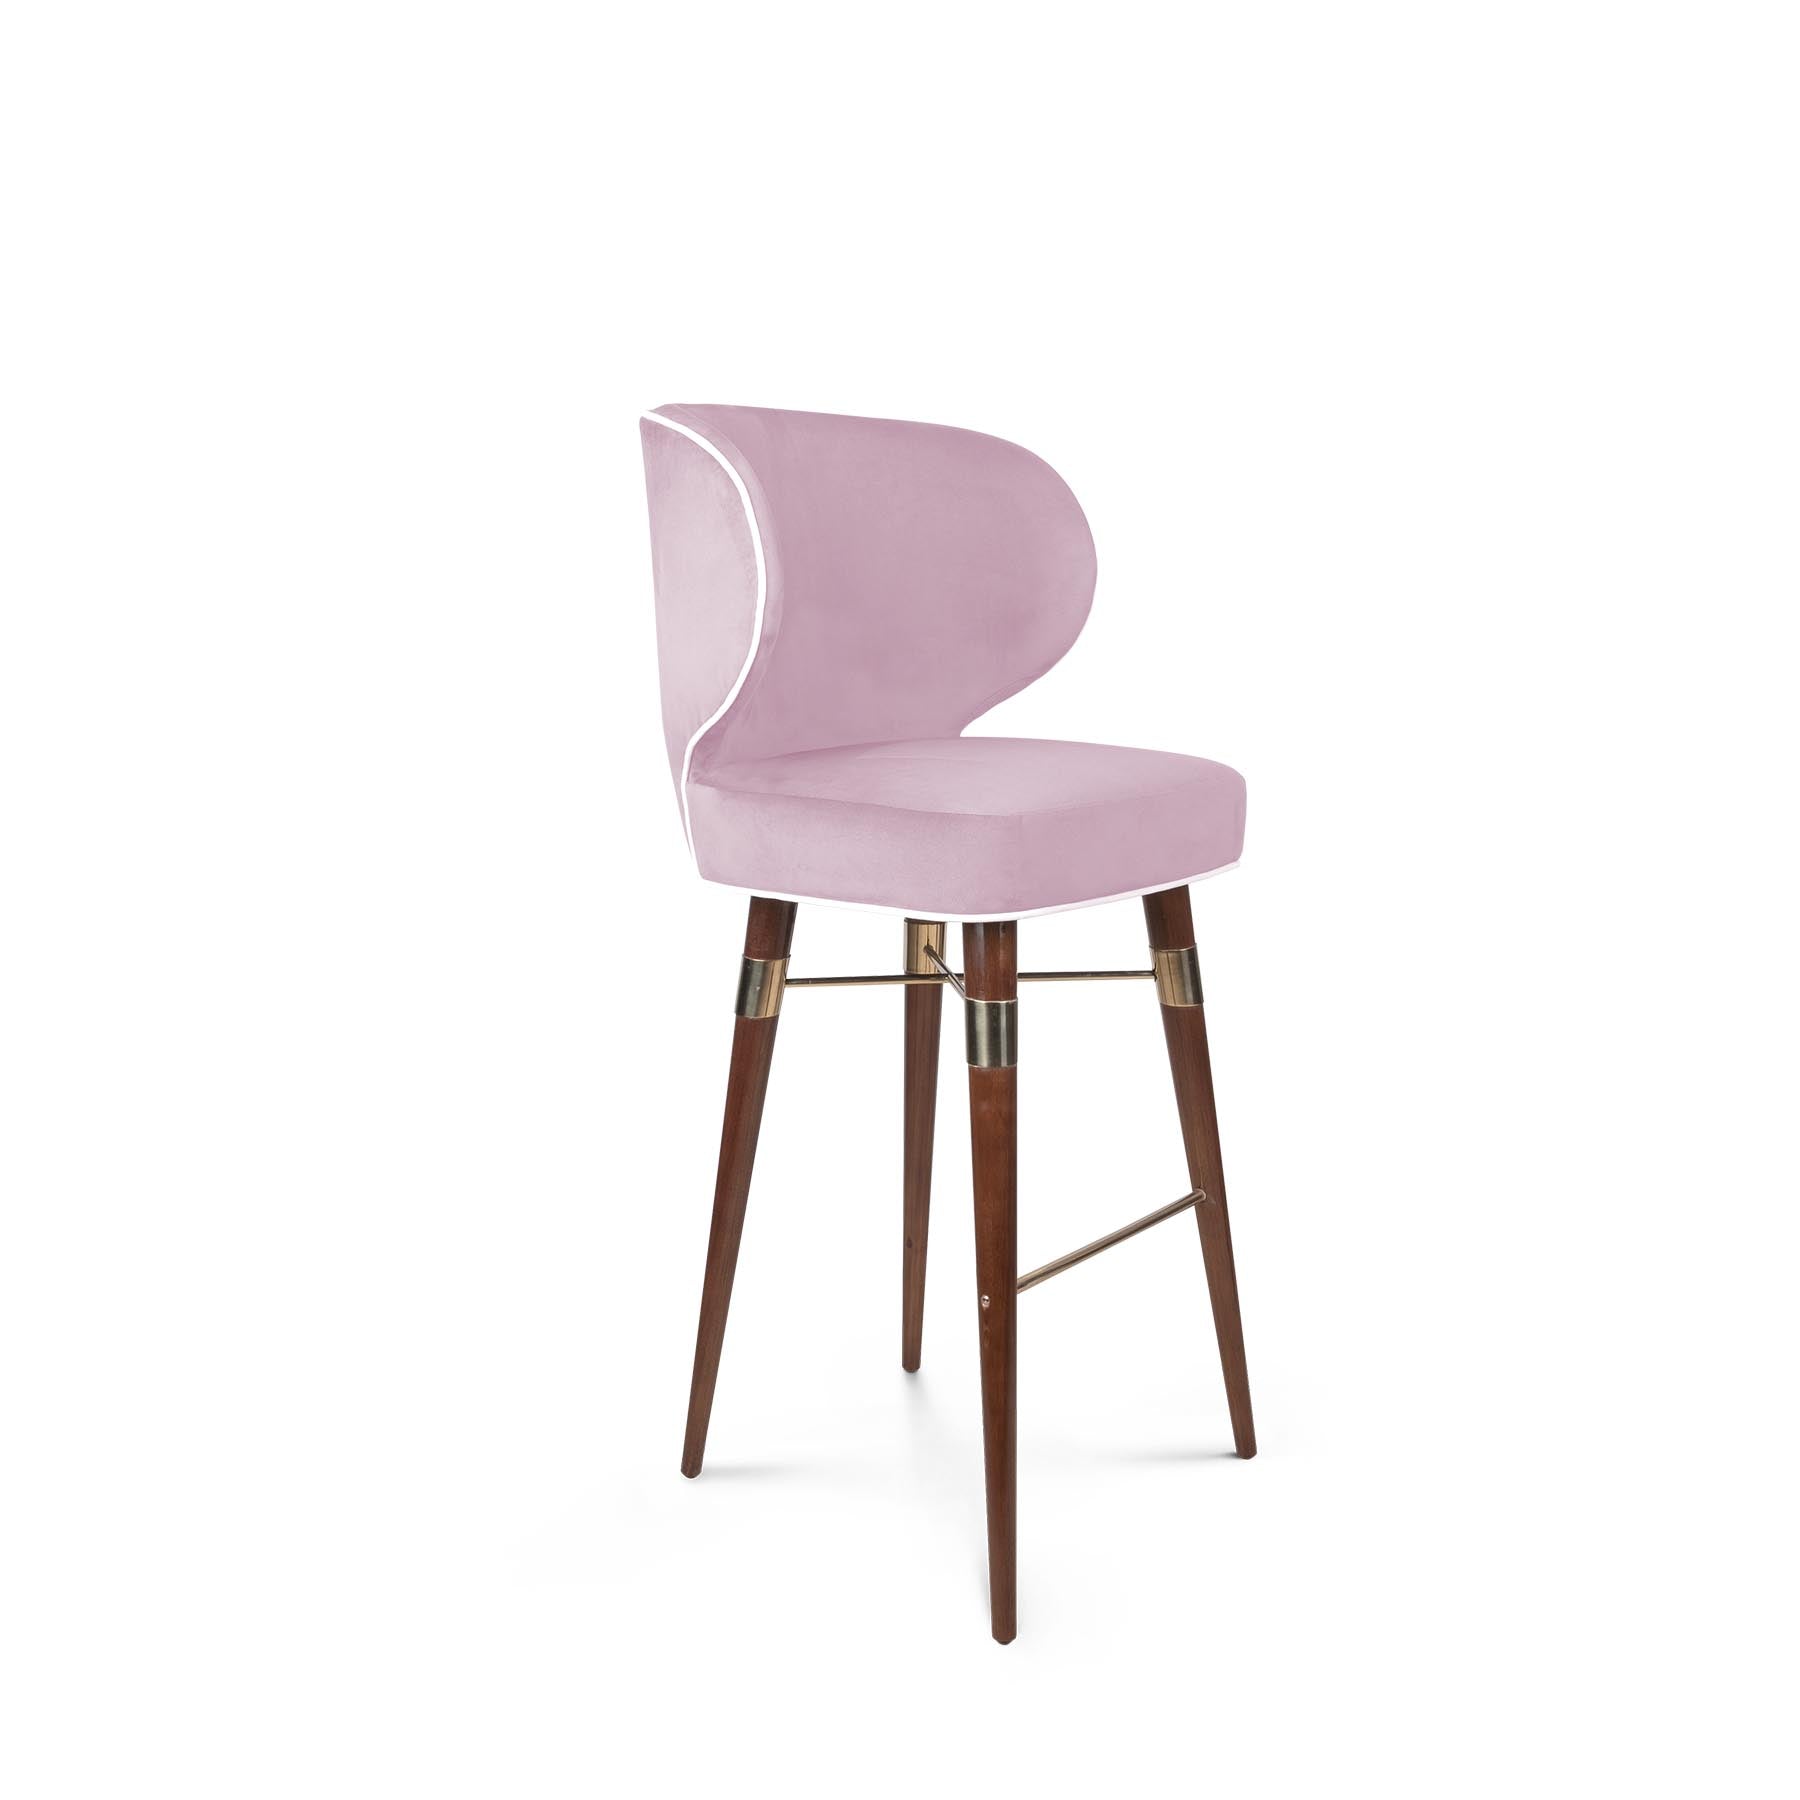 LOUIS - BAR CHAIR | Modern Furniture + Decor